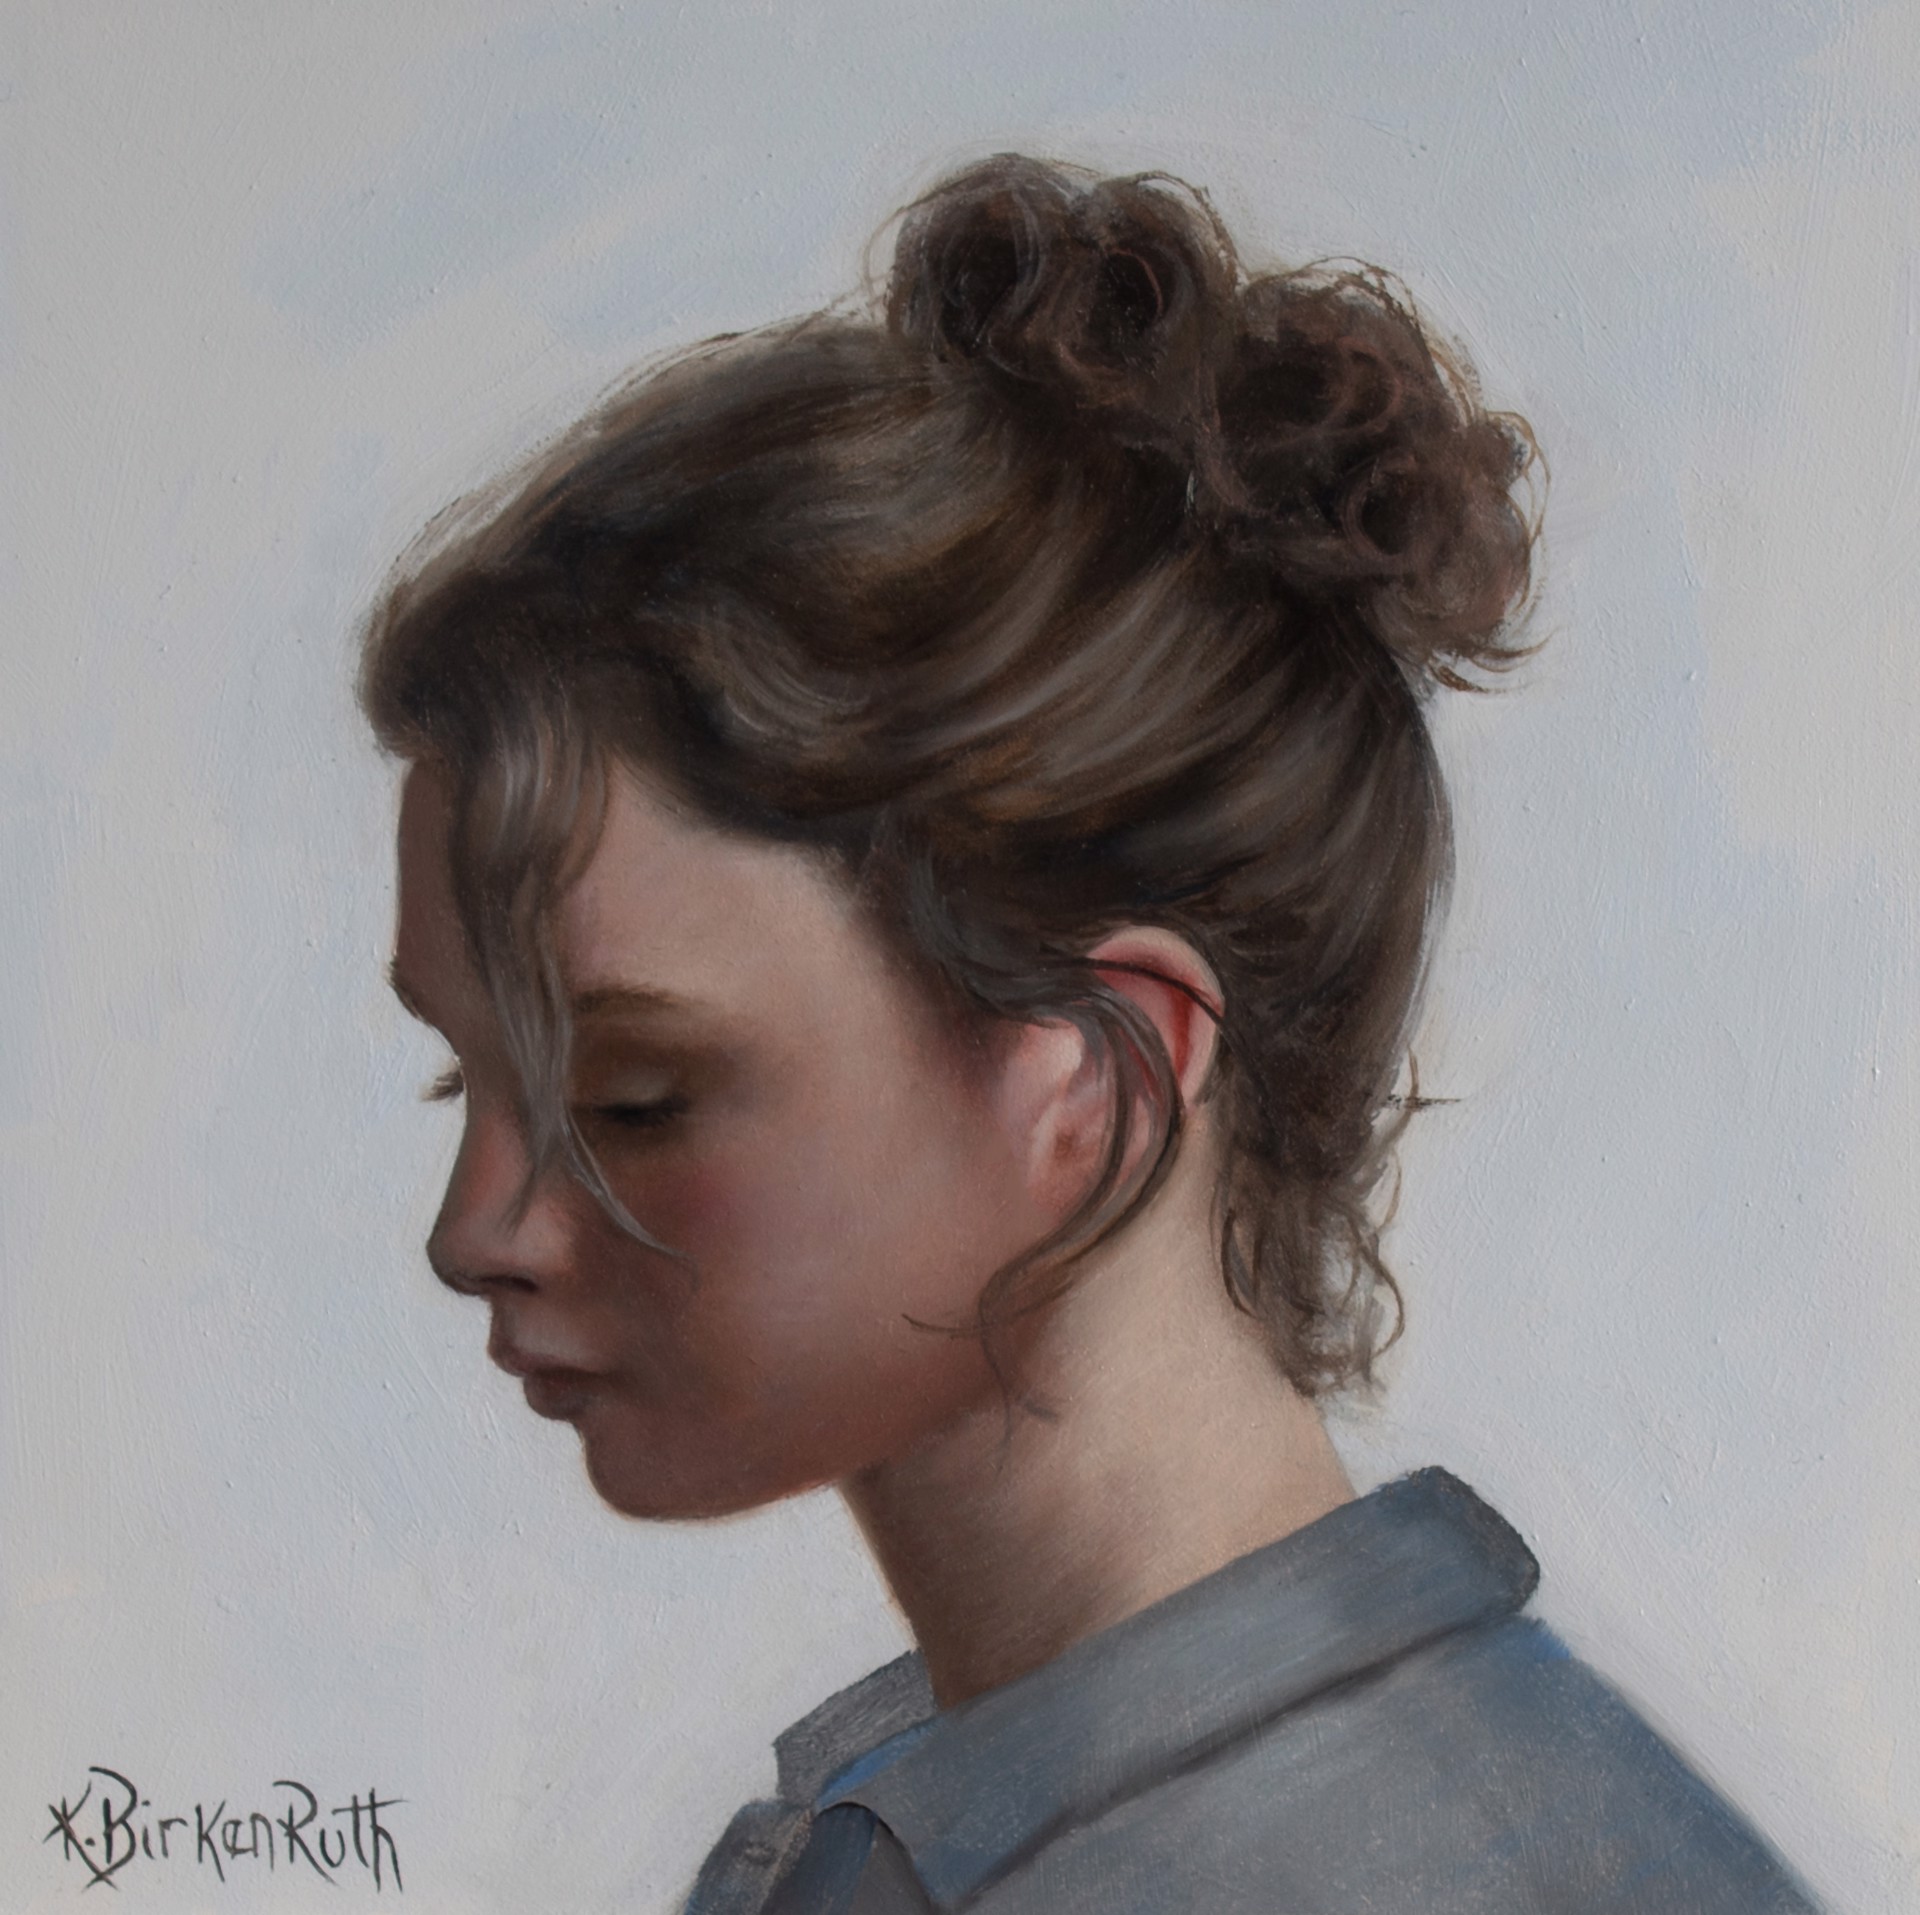 Curls by Kelly Birkenruth